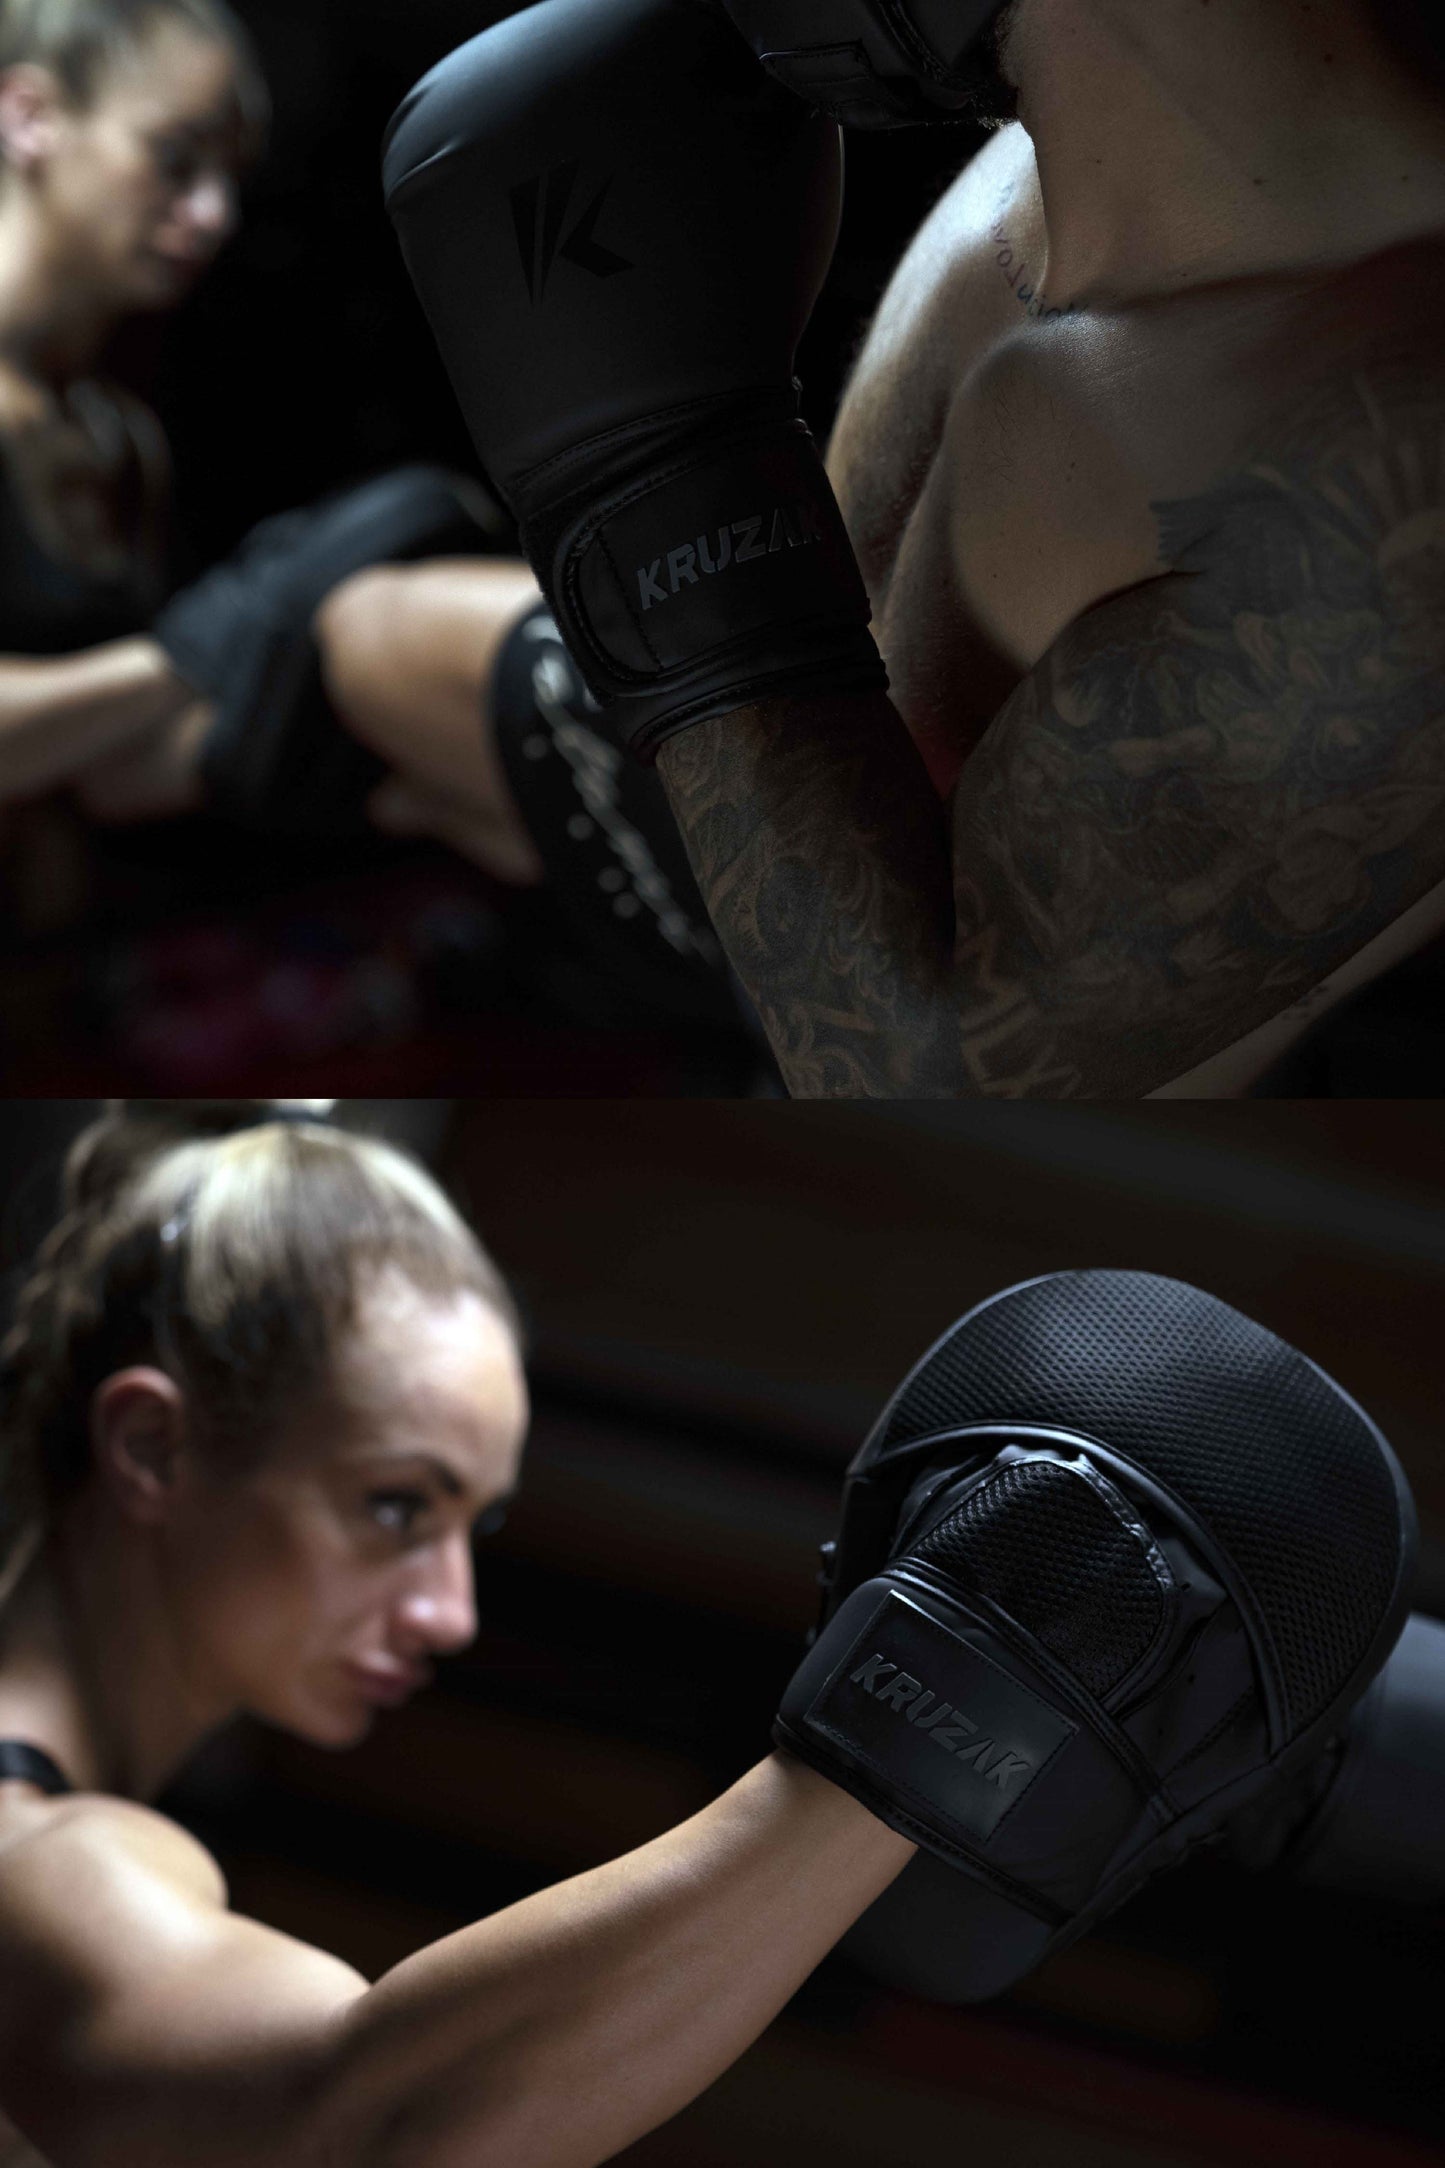 Product demonstration of Kruzak Unisex Matte Black Boxing Gloves